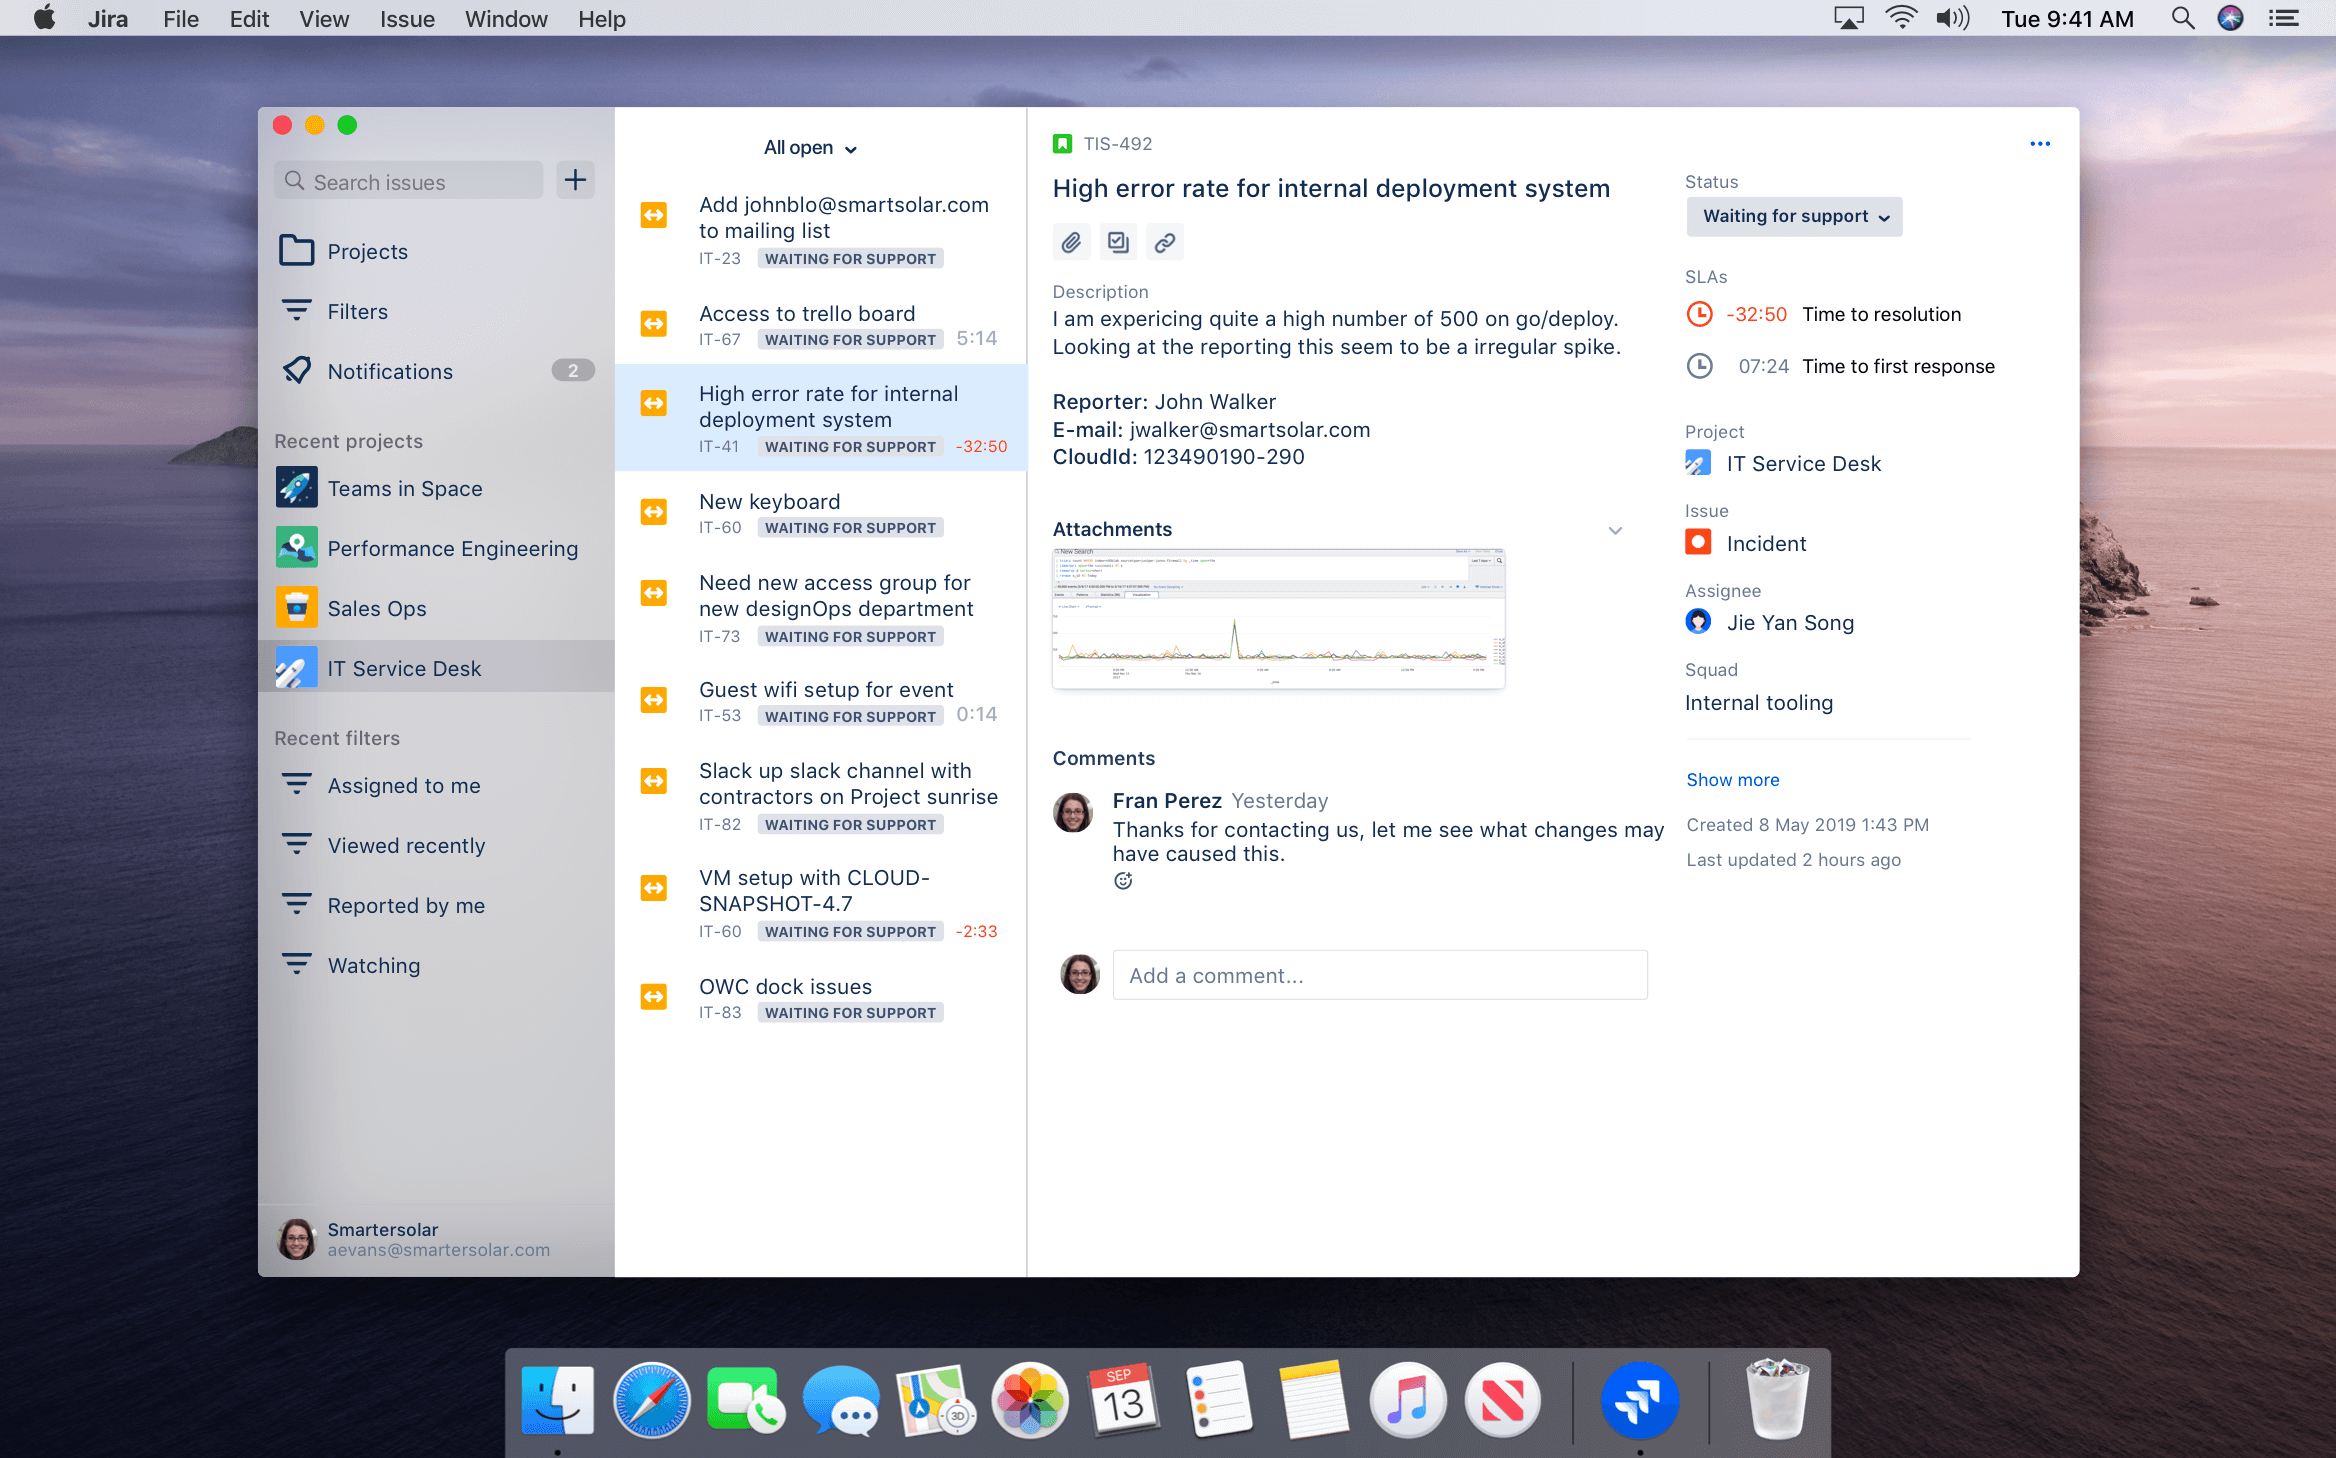 mac app cleaner